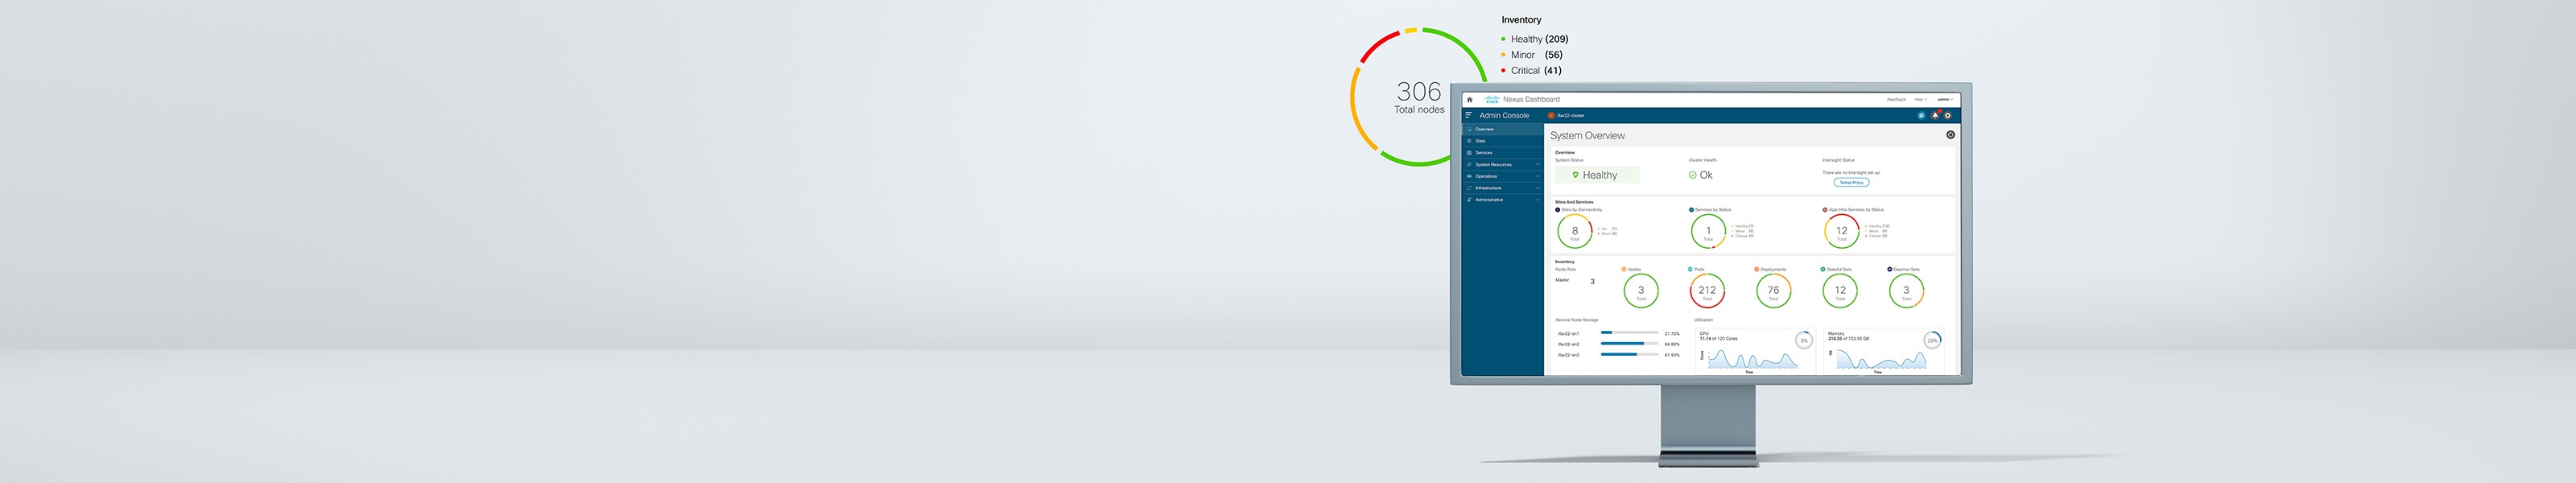 Cisco Nexus Dashboard montrant une vue d’ensembe du système